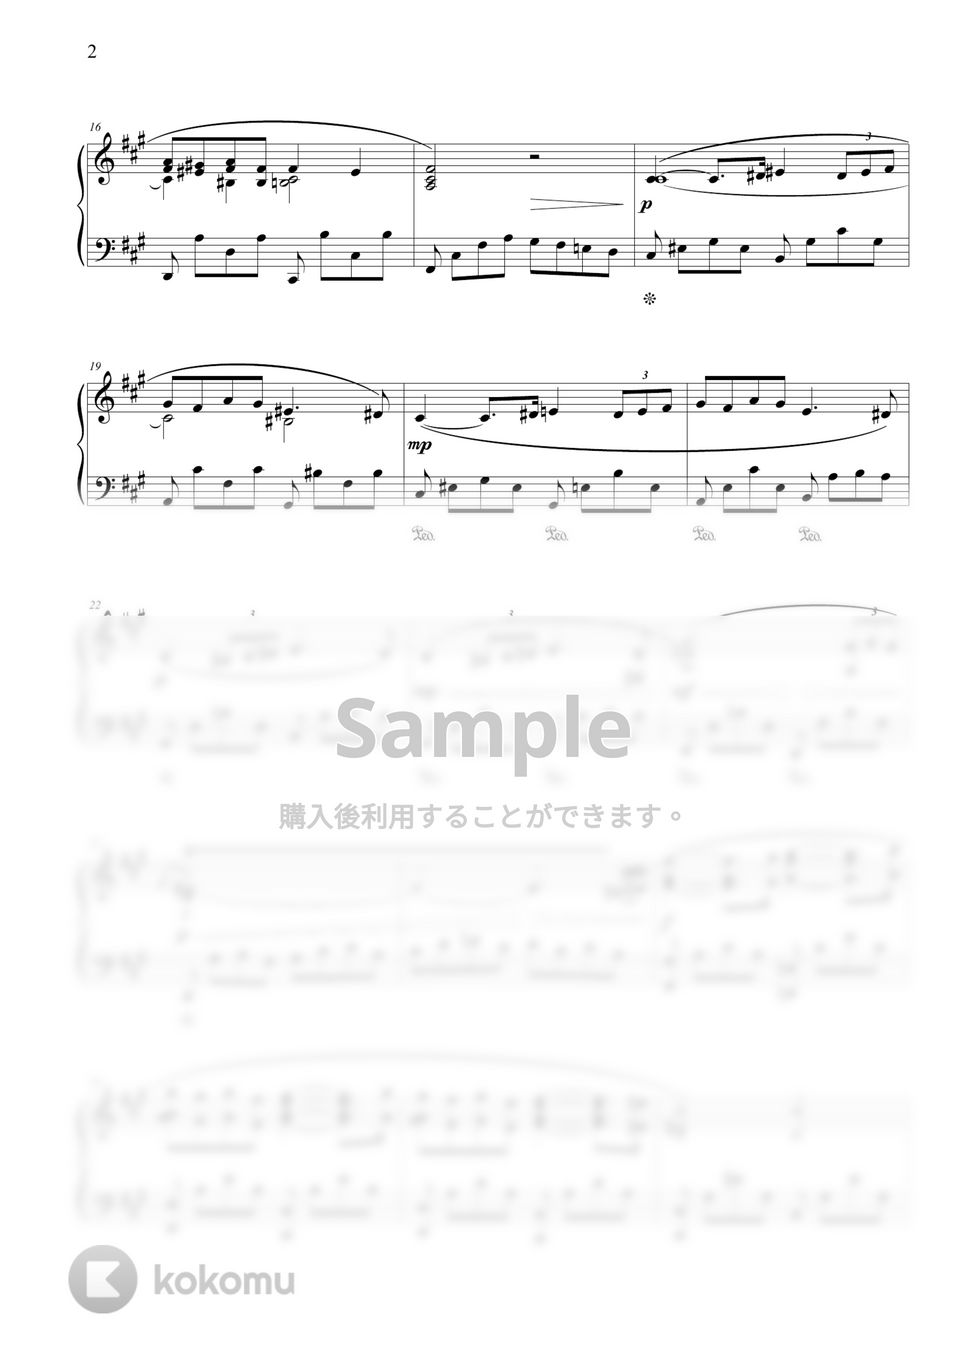 ガブリエル・フォーレ (G. Fauré) - パヴァーヌ (中級バージョン) by THIS IS PIANO